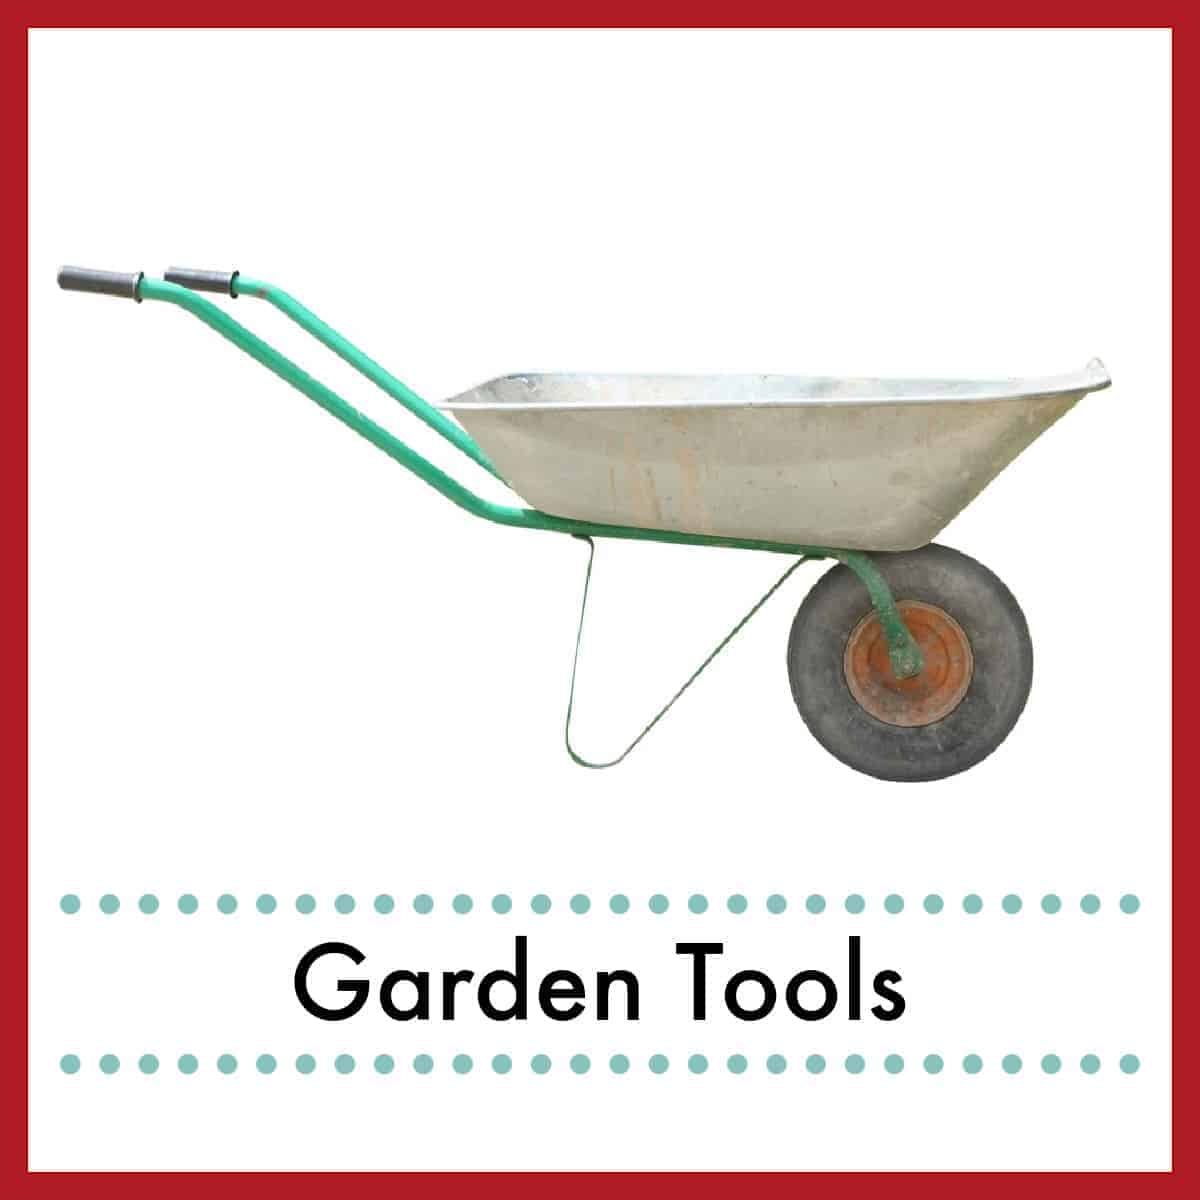 https://thereidhomestead.com/wp-content/uploads/2020/09/shop-favorite-garden-tools.jpg